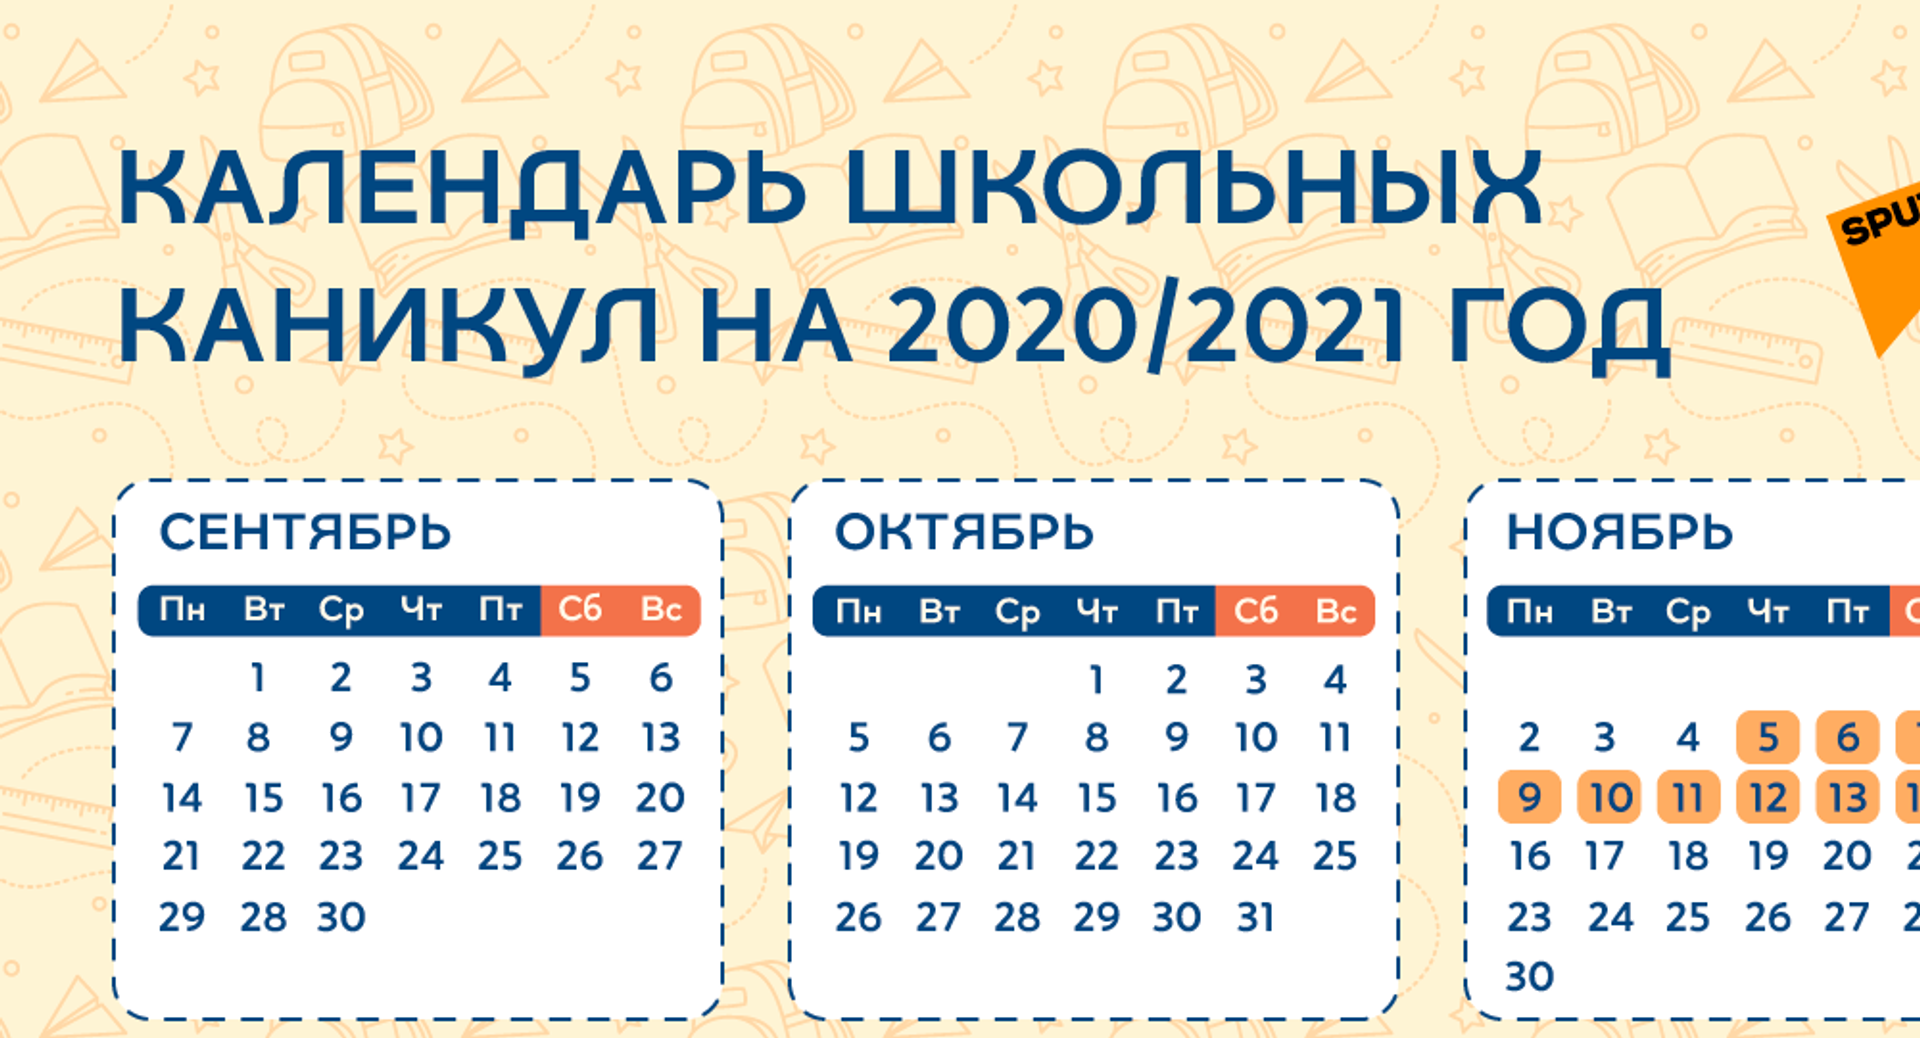 Школьникам Казахстана сократят осенние и весенние каникулы в 2021-2022 учебном году - Sputnik Казахстан, 1920, 14.06.2021